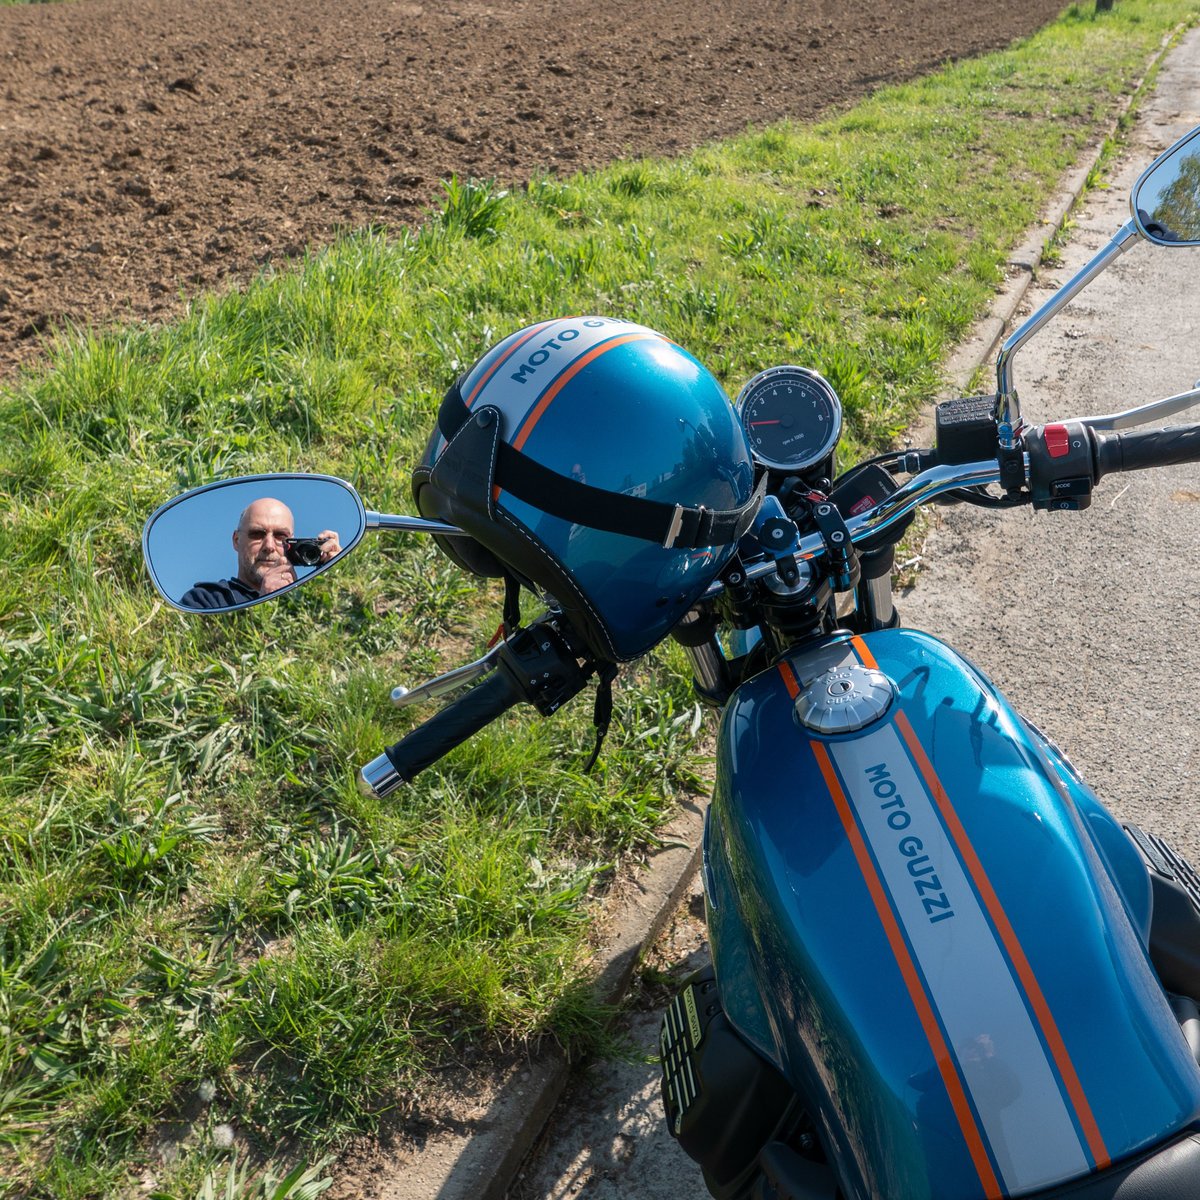 070 200421 Moto Guzzi 49 selfie.jpg